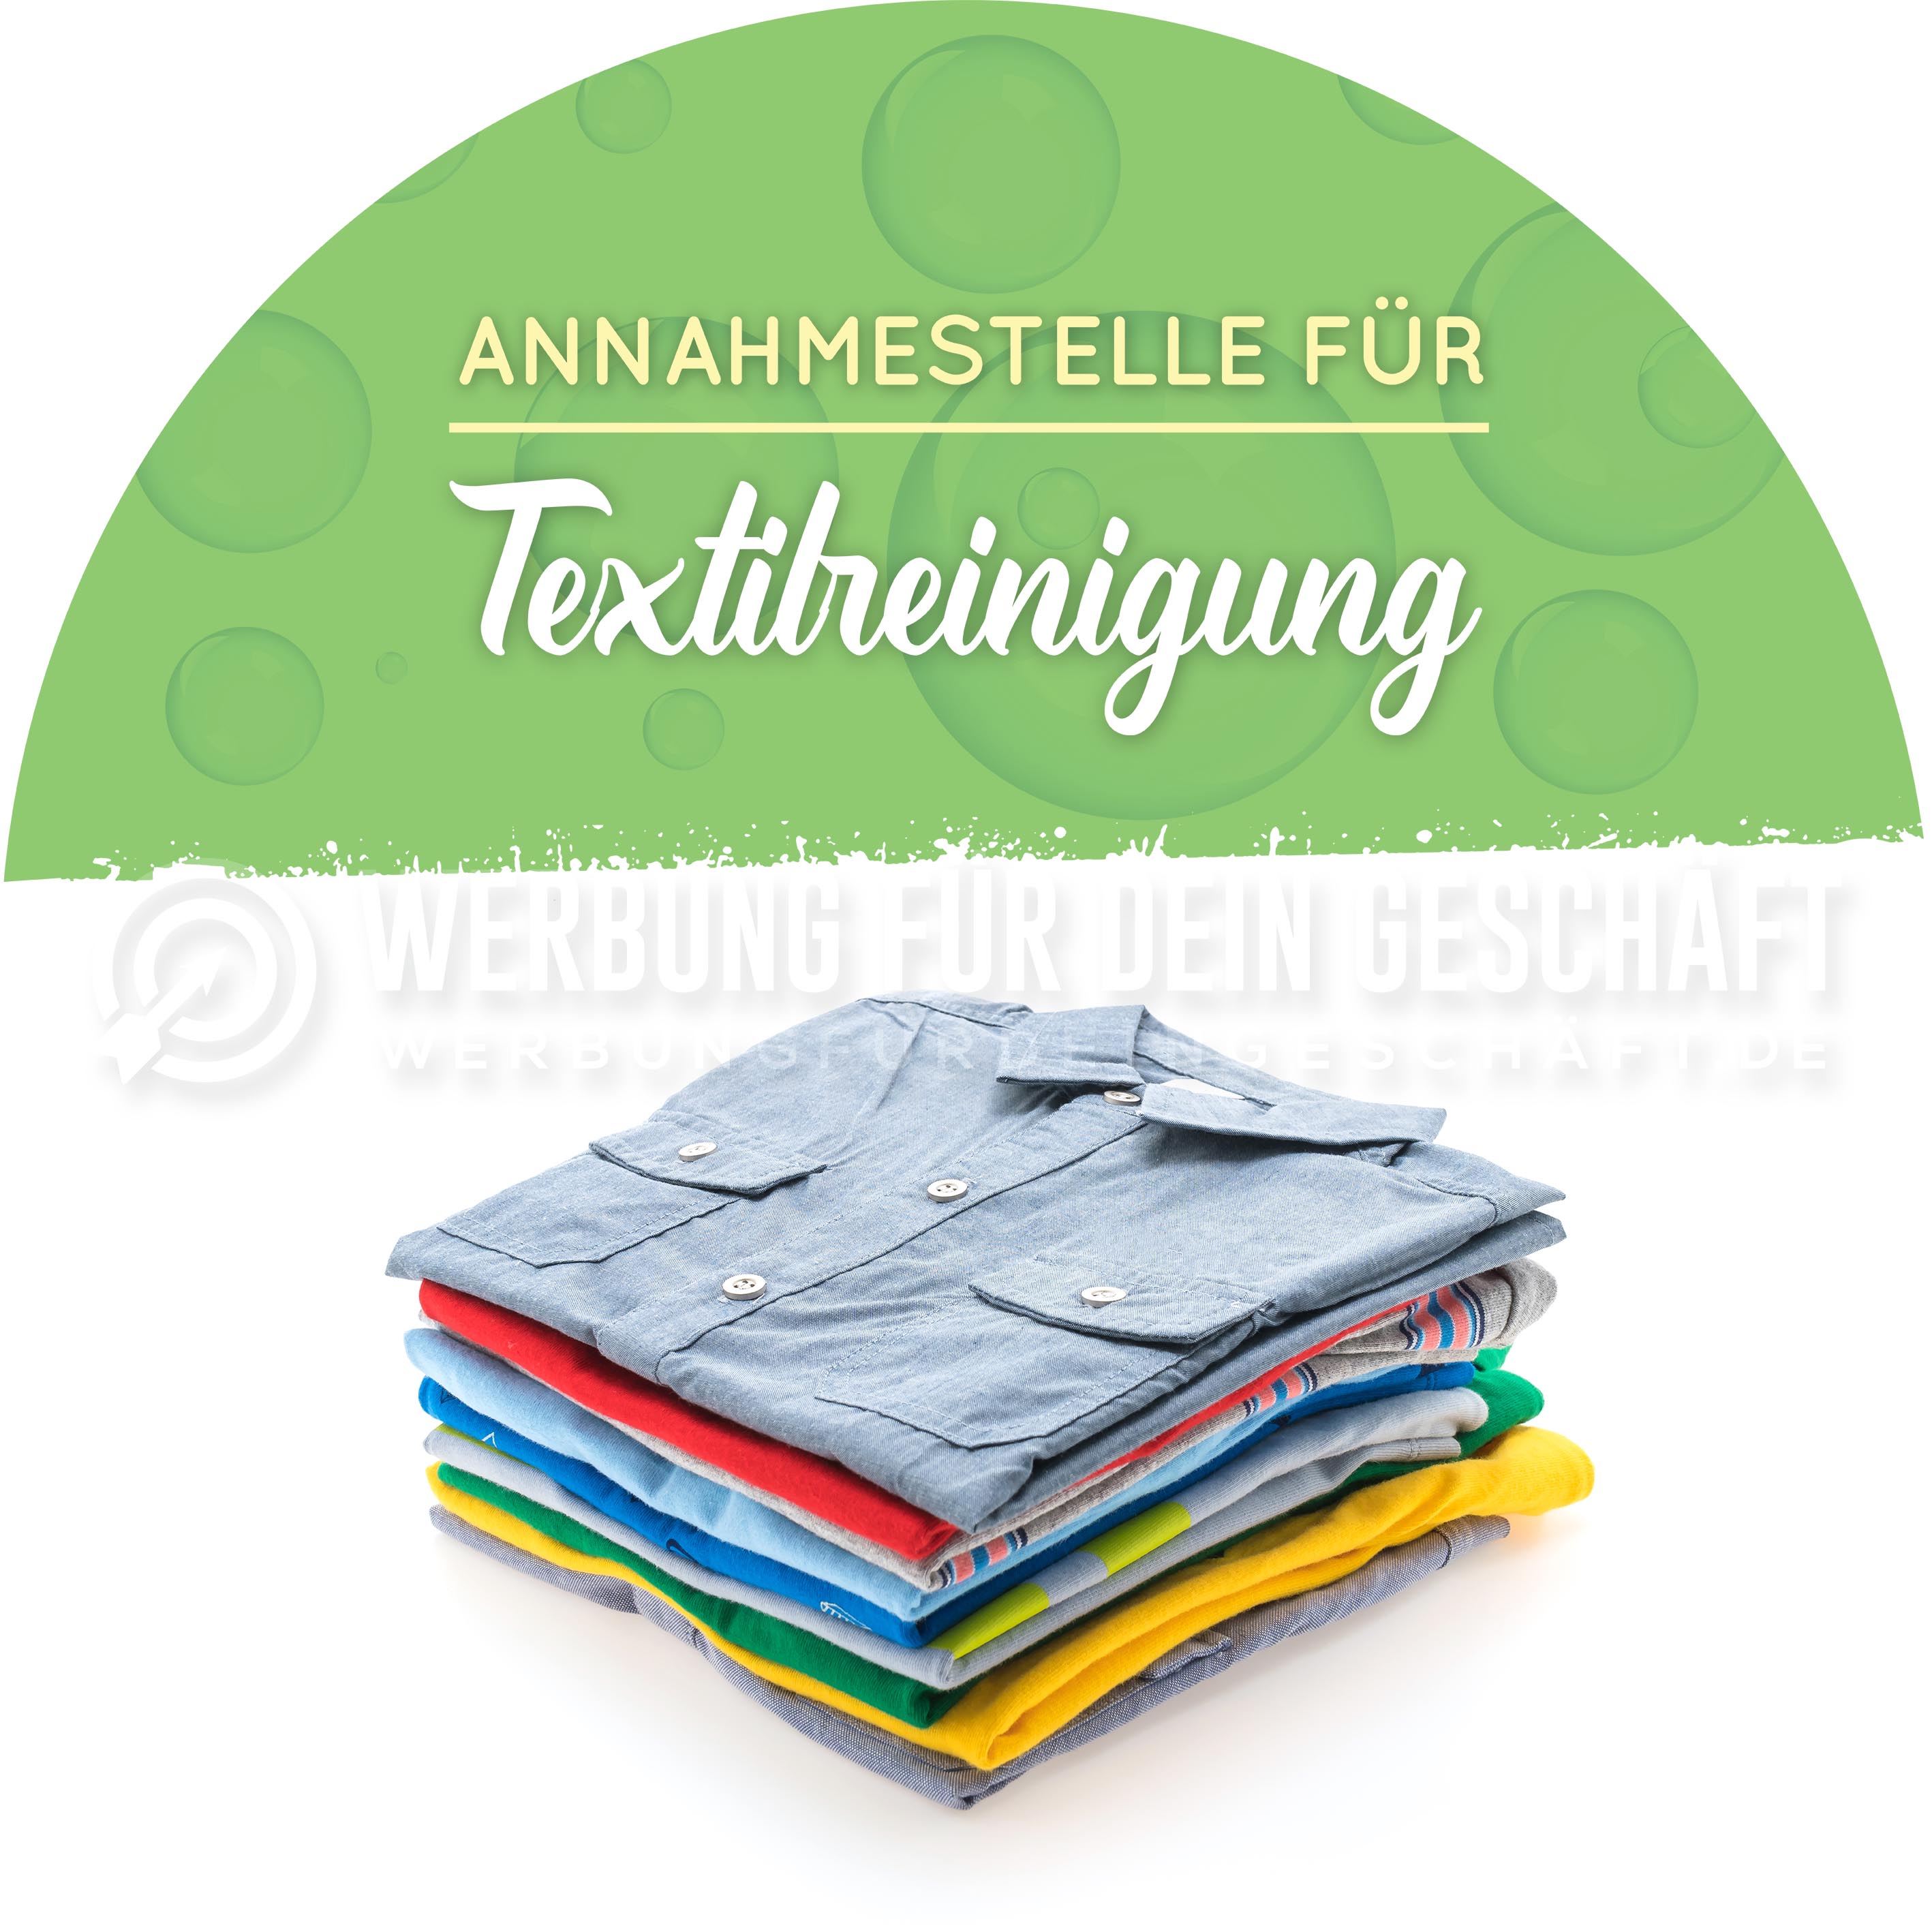 Rund | Annahmestelle für Textilreinigung Werbebanner | Poster für Reinigung | Rundformat